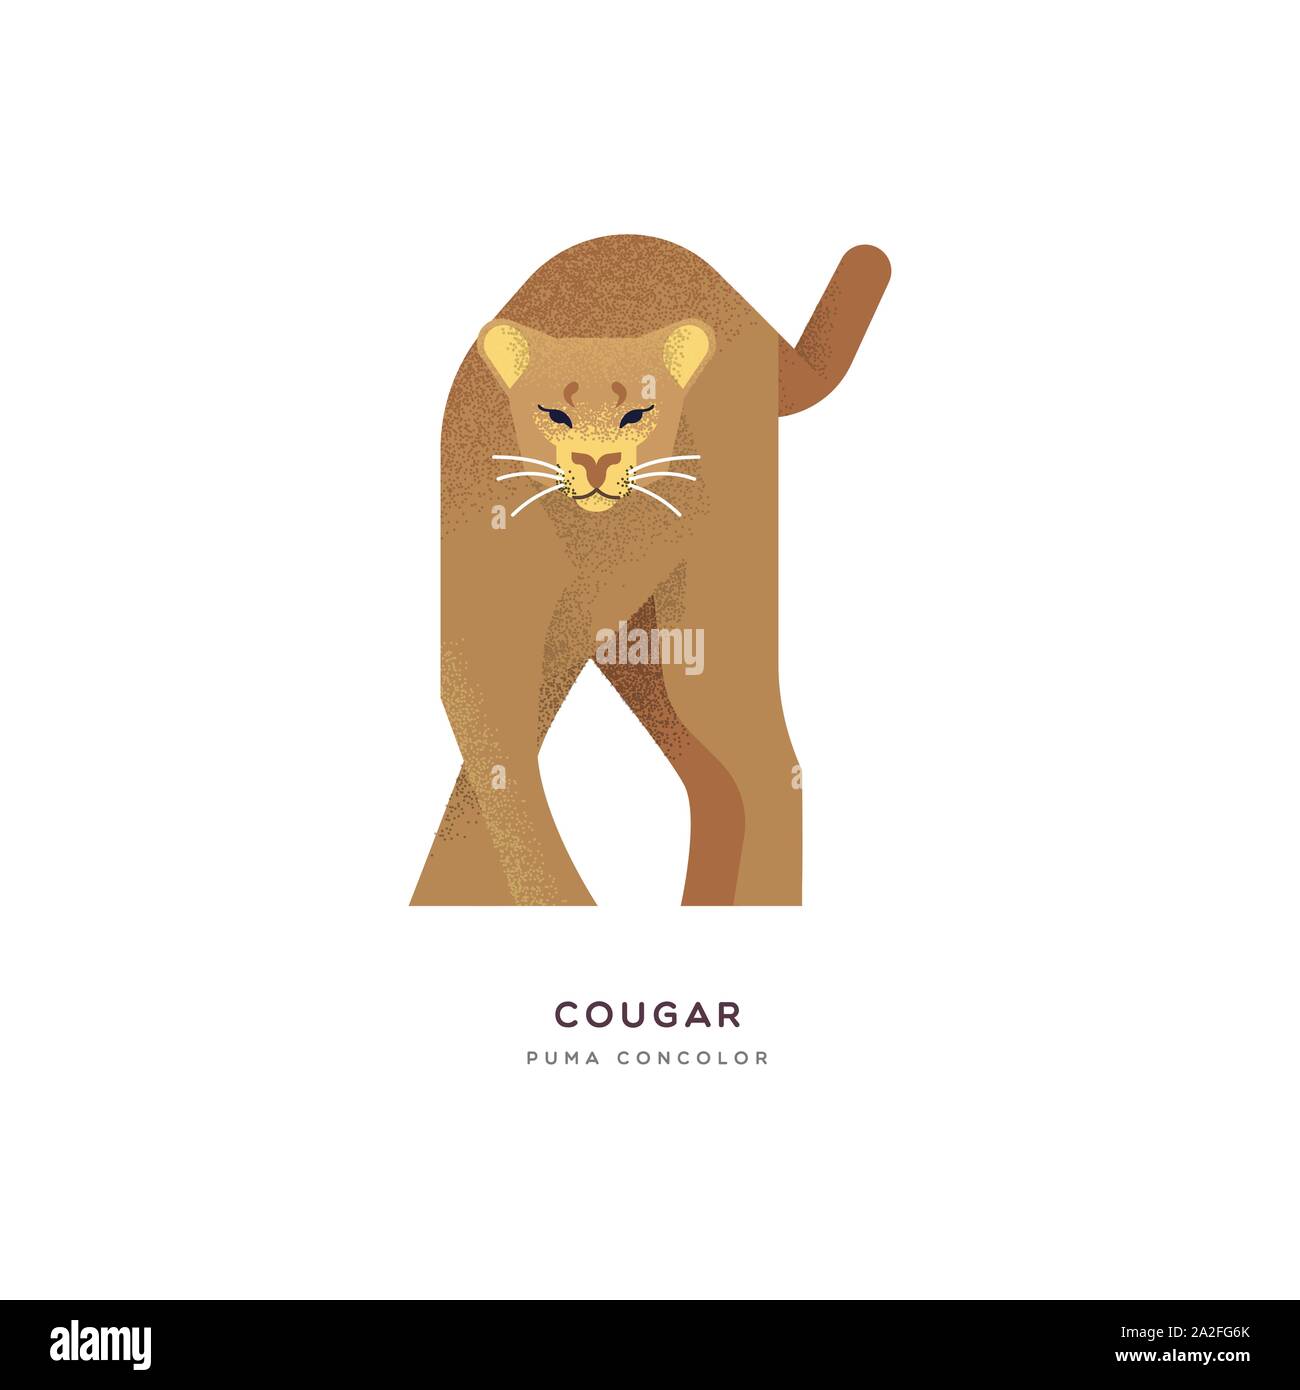 Cougar illustrazione degli animali di grande gatto selvatico isolato su sfondo bianco. Istruzione di progettazione della fauna selvatica con specie di fauna nome etichetta. Illustrazione Vettoriale